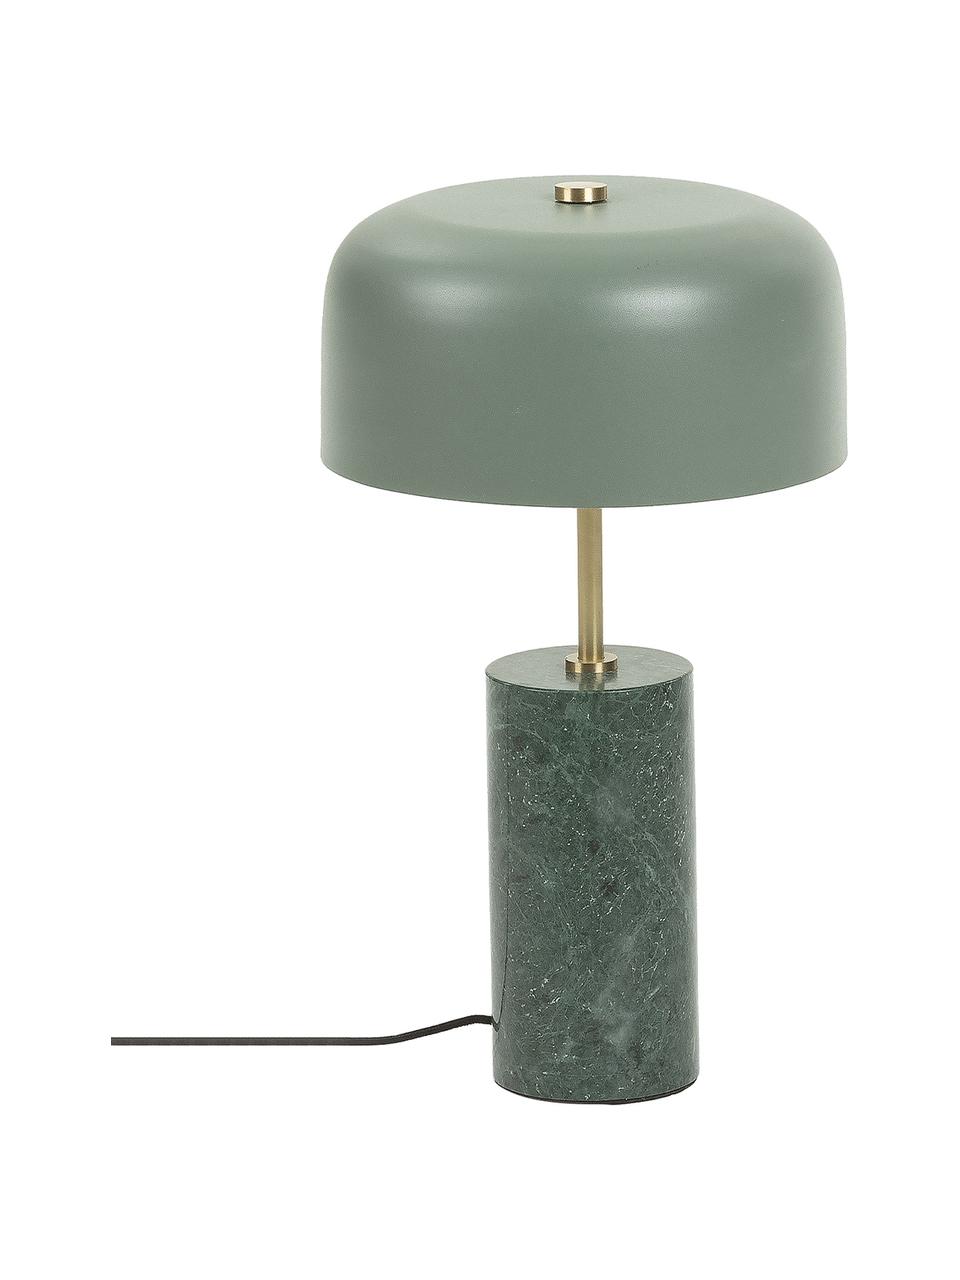 Tischlampe Videl mit Marmorfuß, Lampenschirm: Metall, beschichtet, Lampenfuß: Marmor, Gestell: Metall, Grün, Ø 26 x H 44 cm